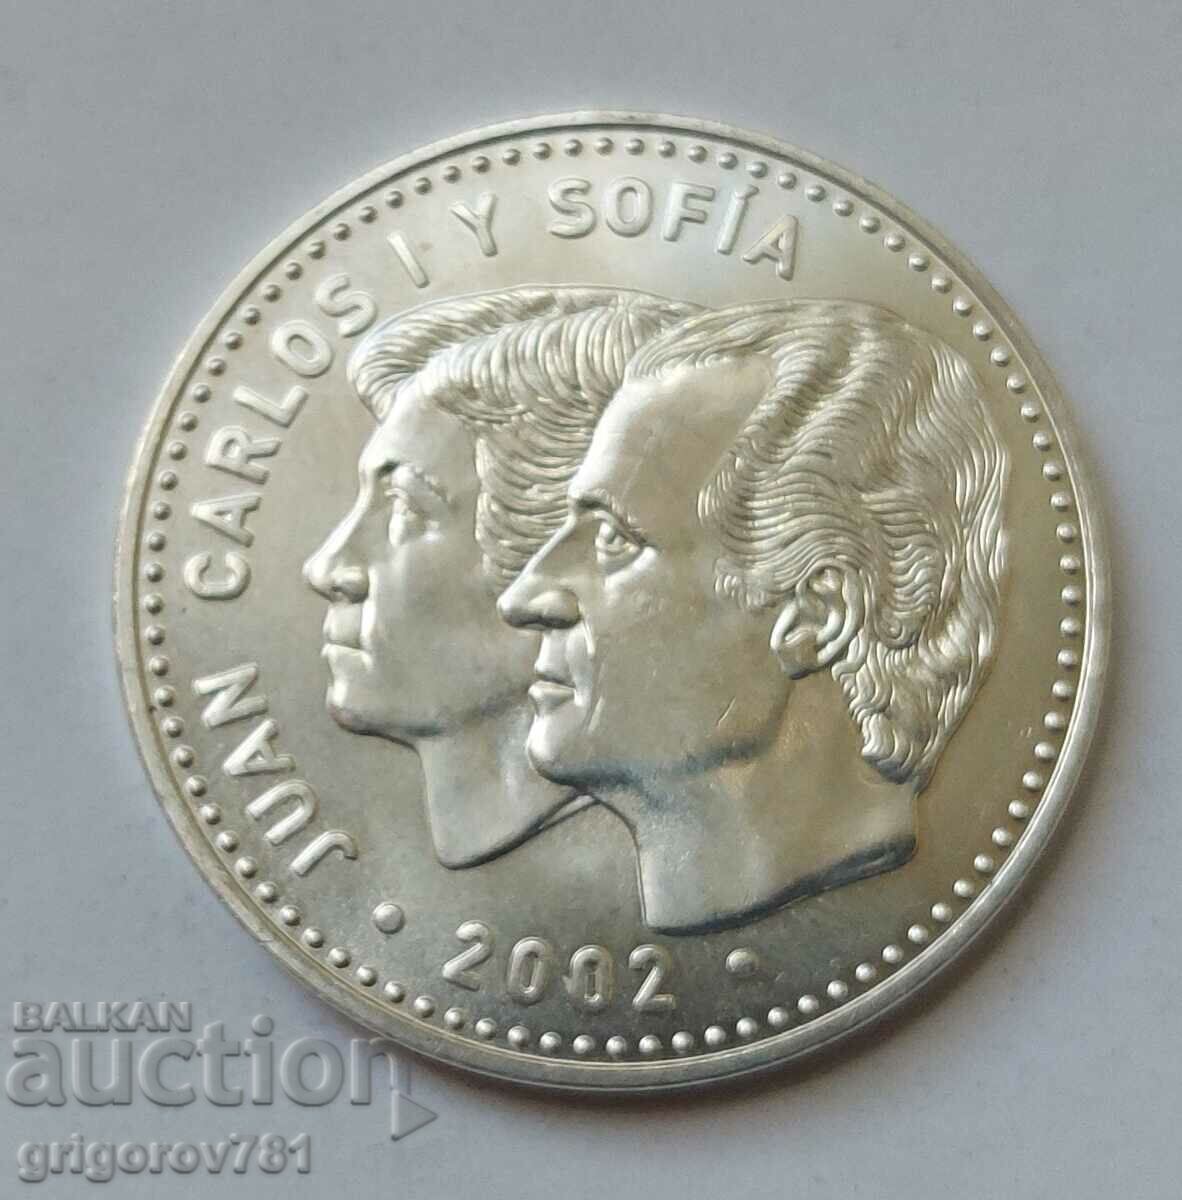 12 Ευρώ Ασημένιο Ισπανία 2002 - Ασημένιο νόμισμα #3